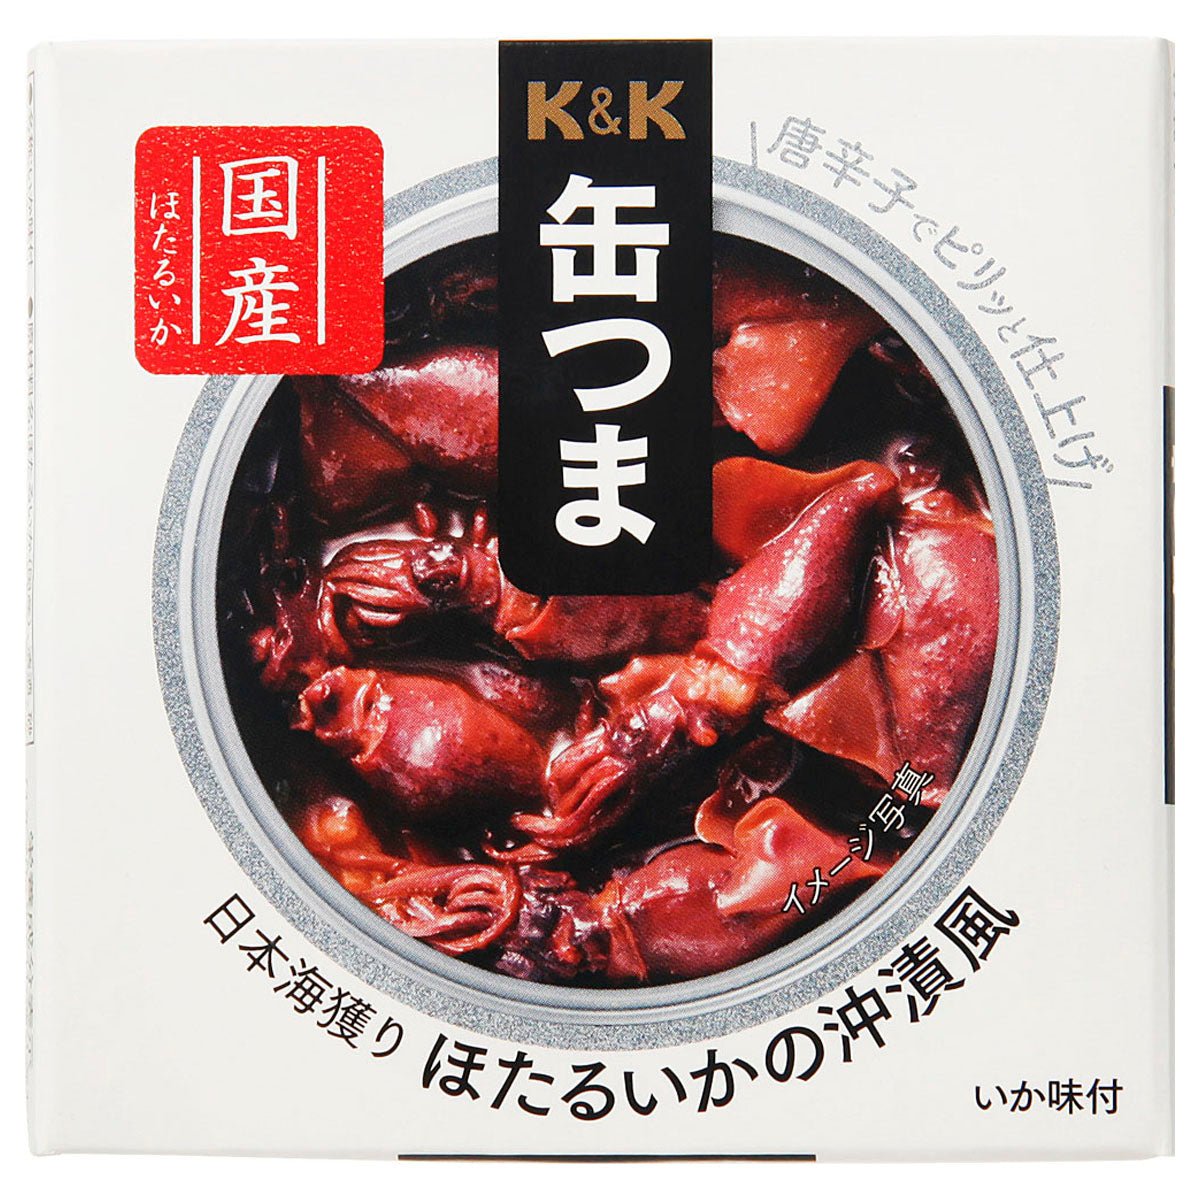 K & K CAN CAN TSUMA 일본 해상 소방관 kuikuzukuzukuzuku 스타일